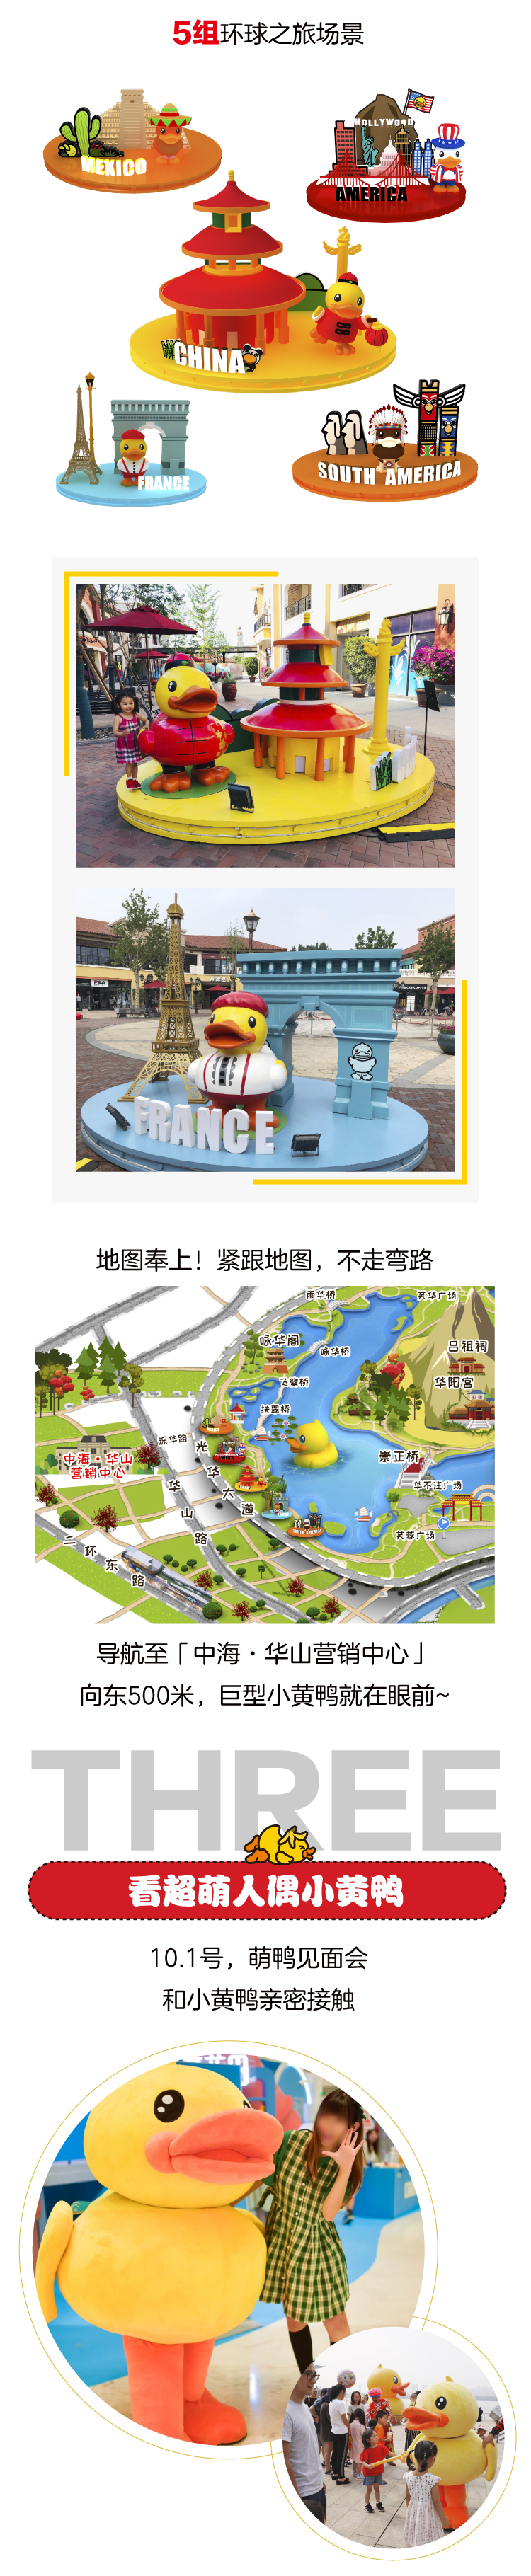 小黄鸭来了！中海华山国际儿童嘉年华小黄鸭环球主题乐园十一假期开园-中国网地产